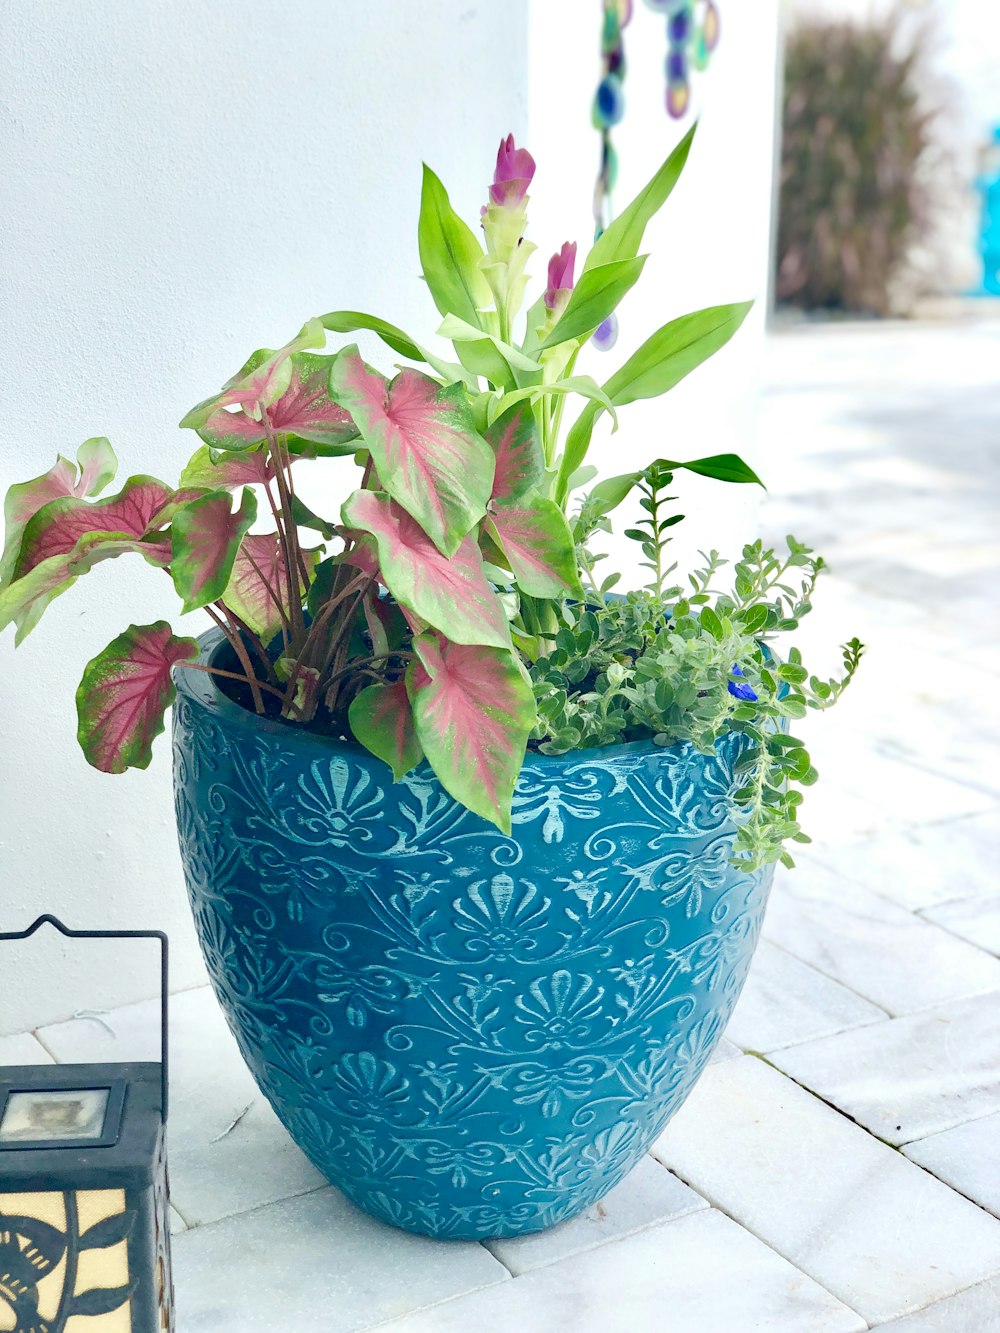 purple flower on blue ceramic vase